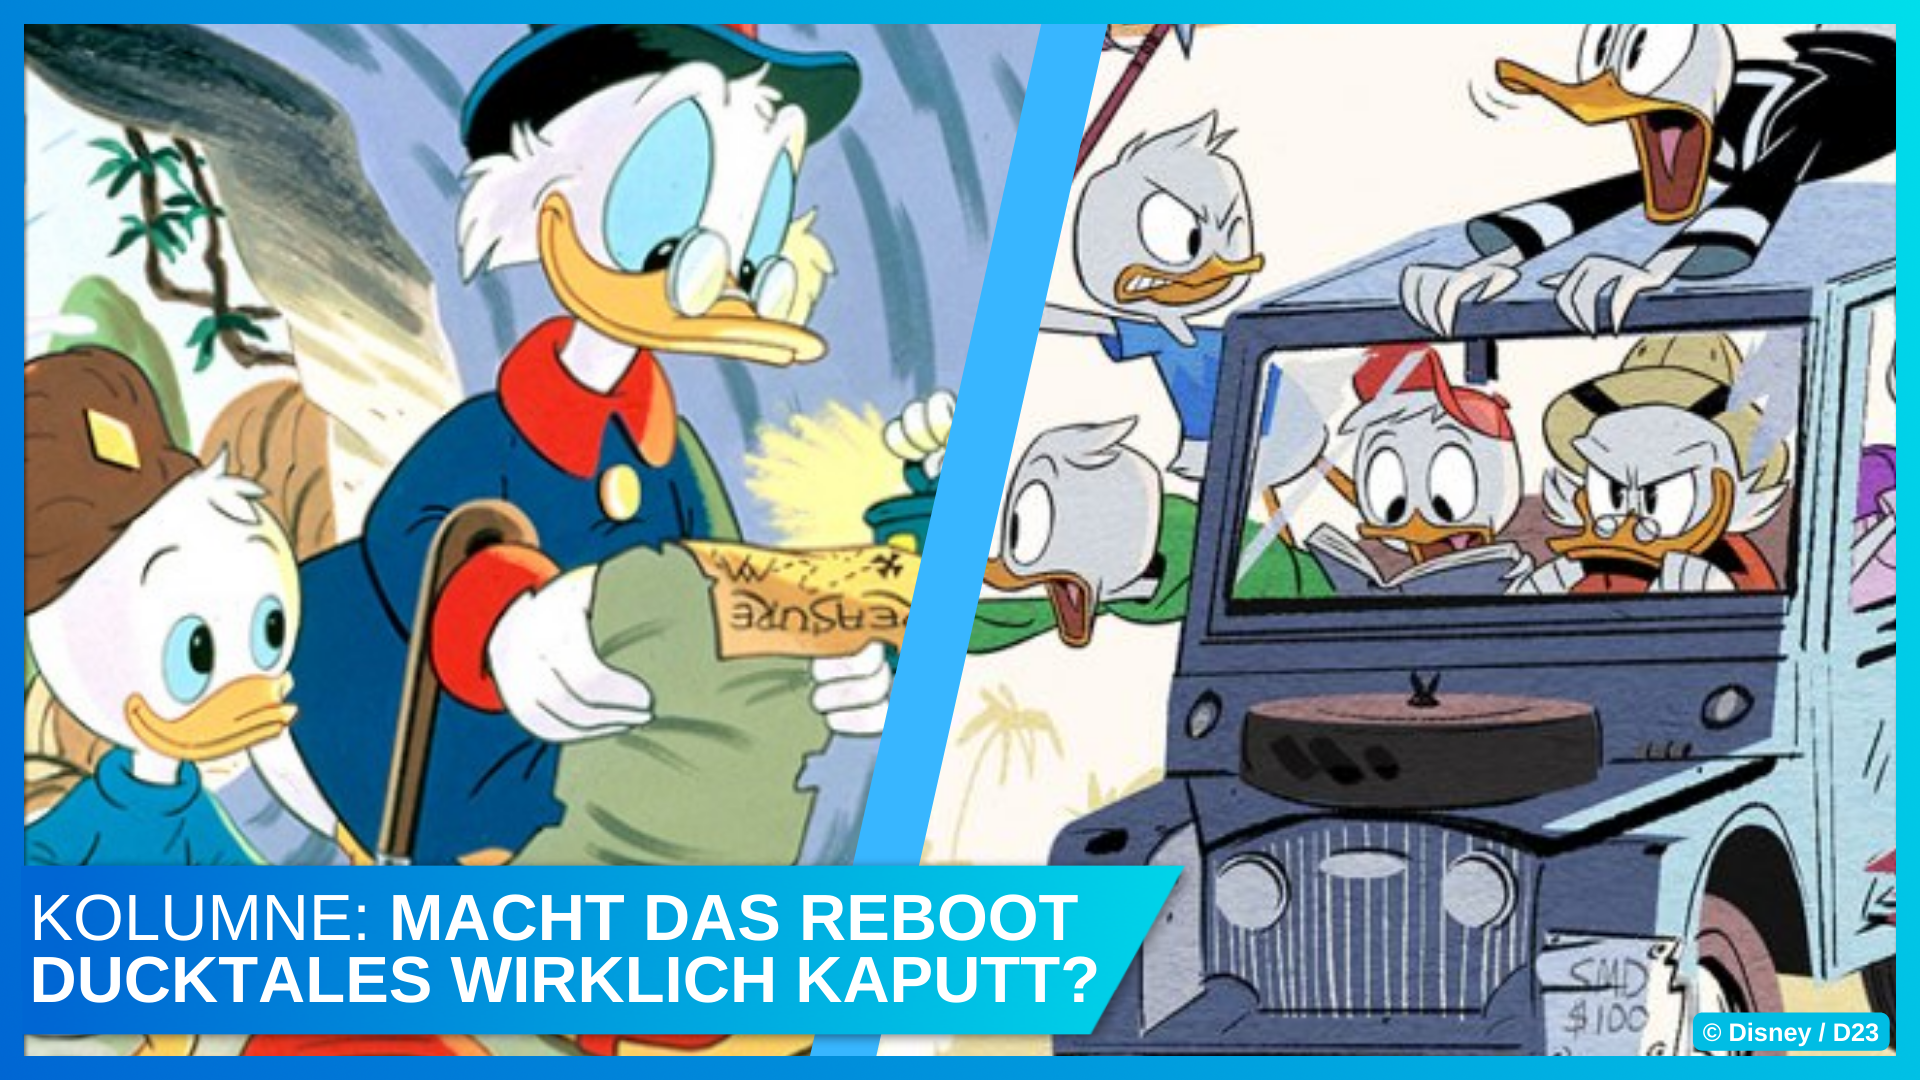 Original DuckTales vs Reboot